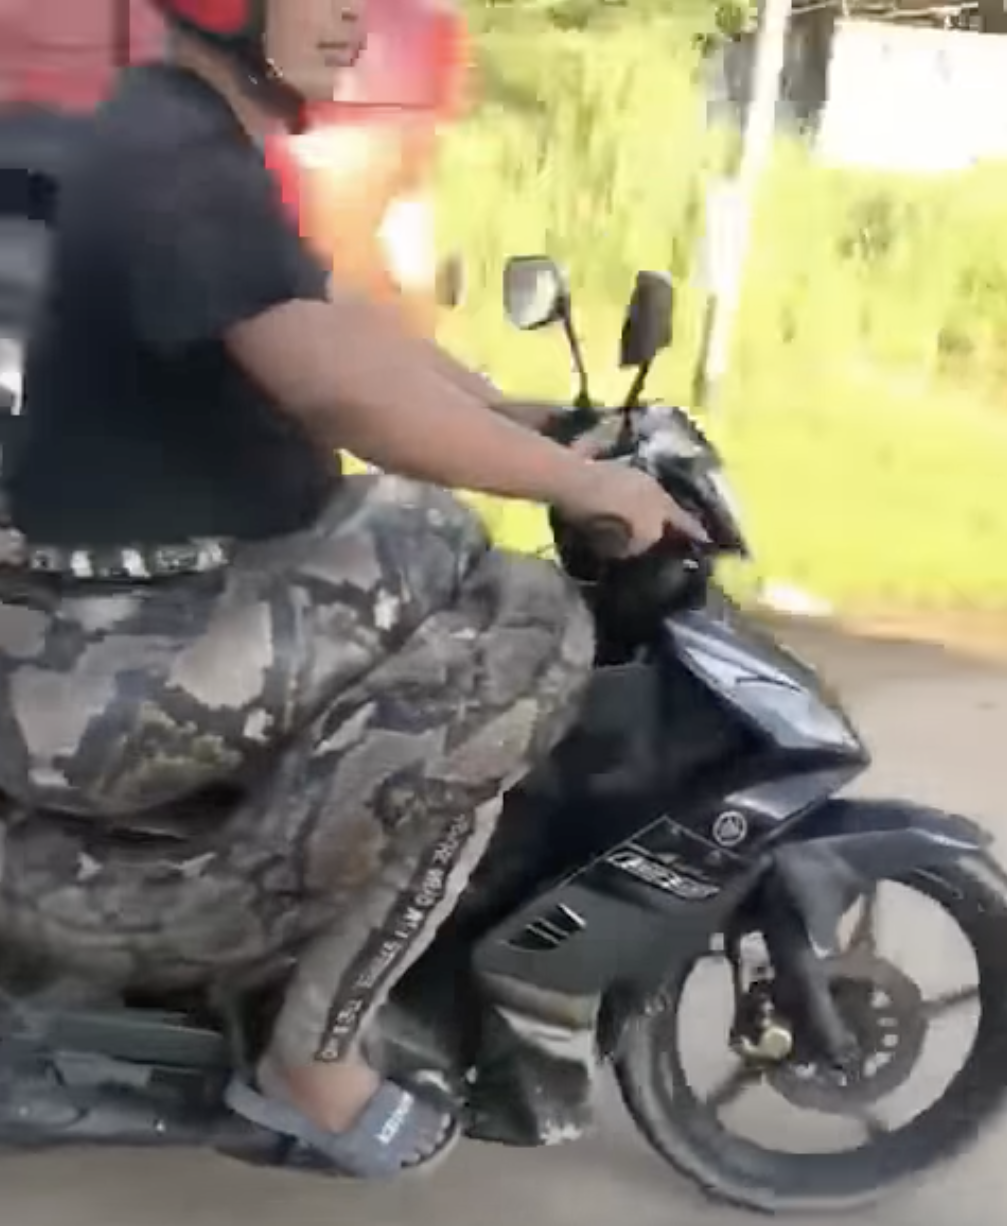 200kg python spotted enjoying a motorcycle ride in kelantan